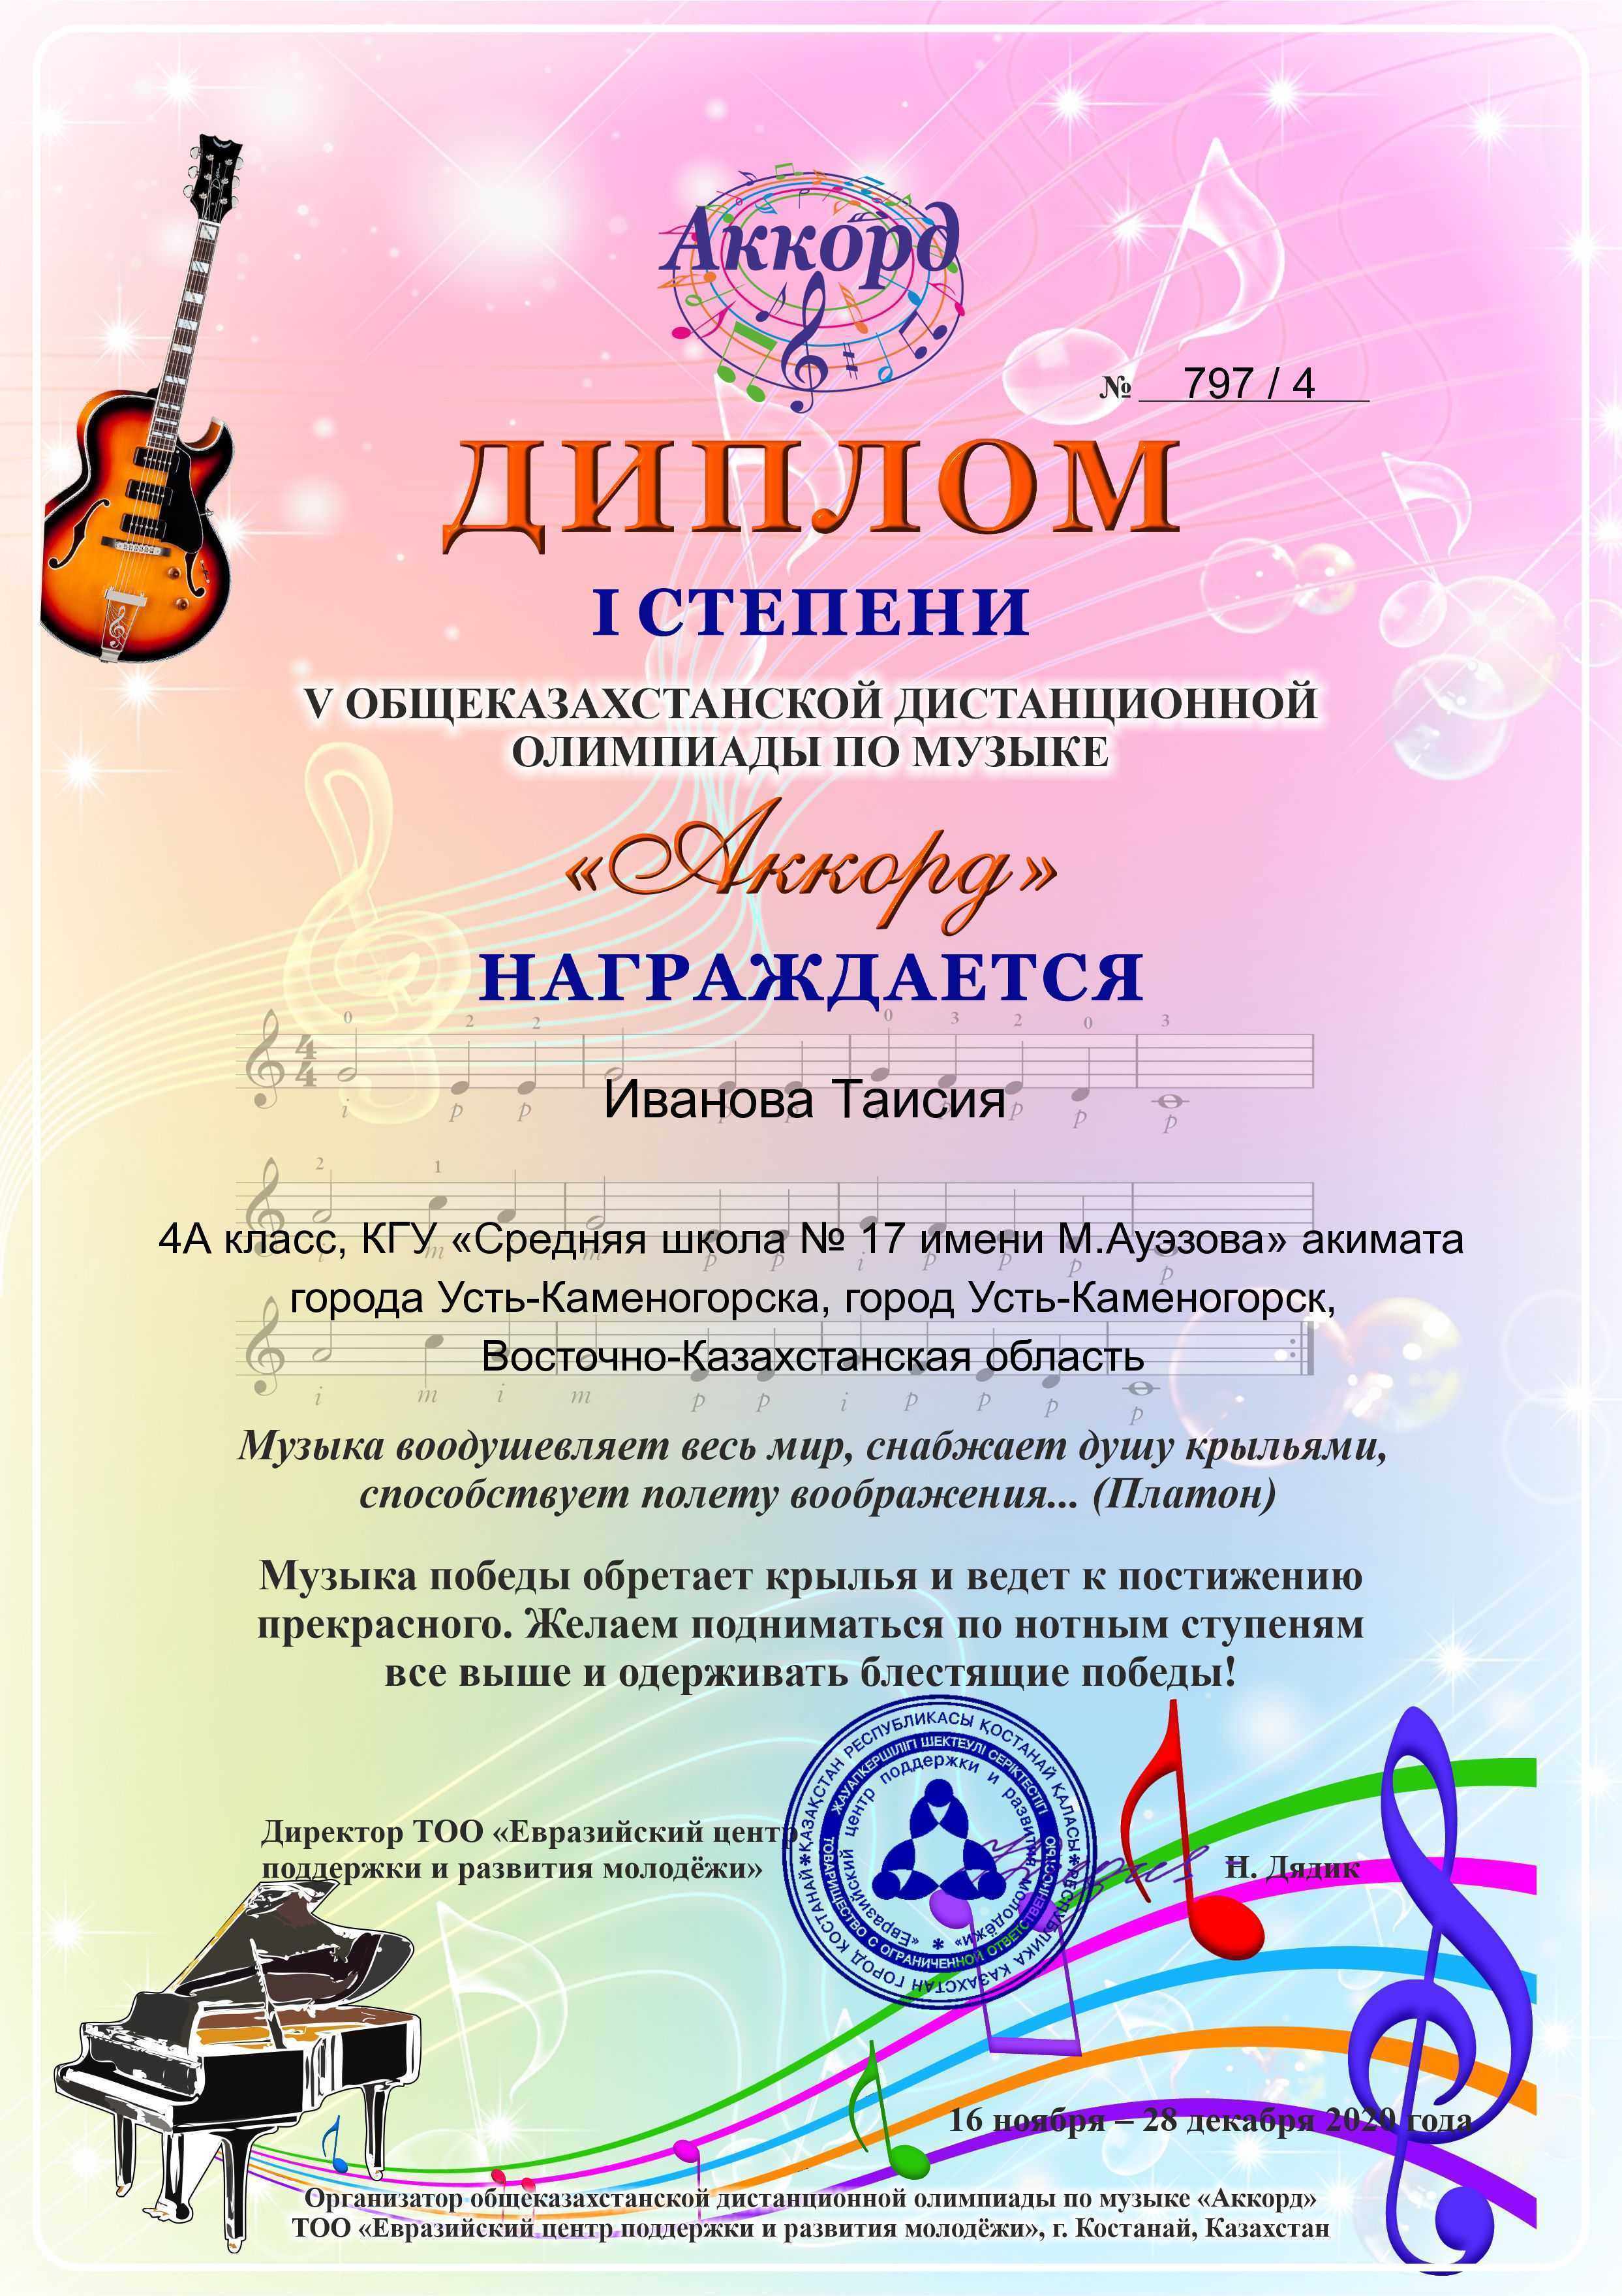 Победители общеказахстанской олимпиады по музыке «Аккорд»